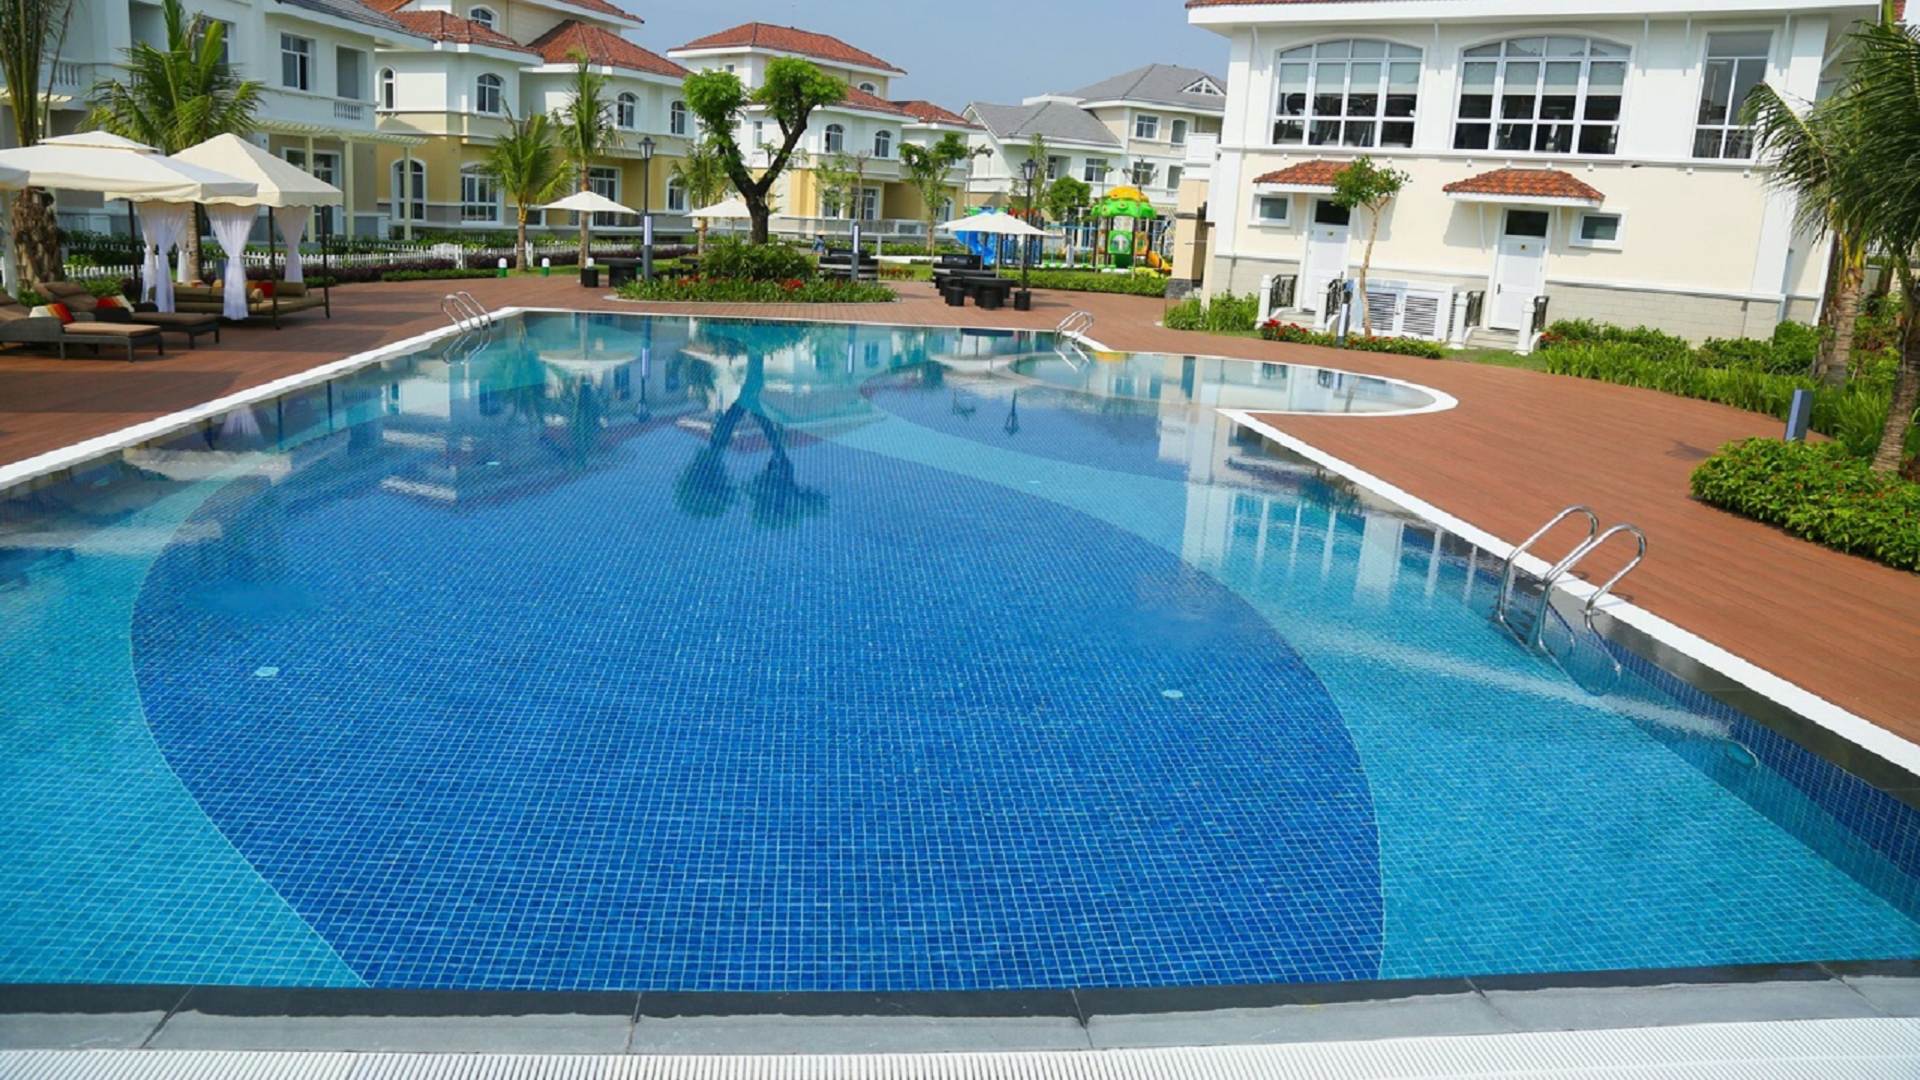 Hùng Vương Pool - Cung cấp thiết bị bể bơi chính hãng toàn quốc